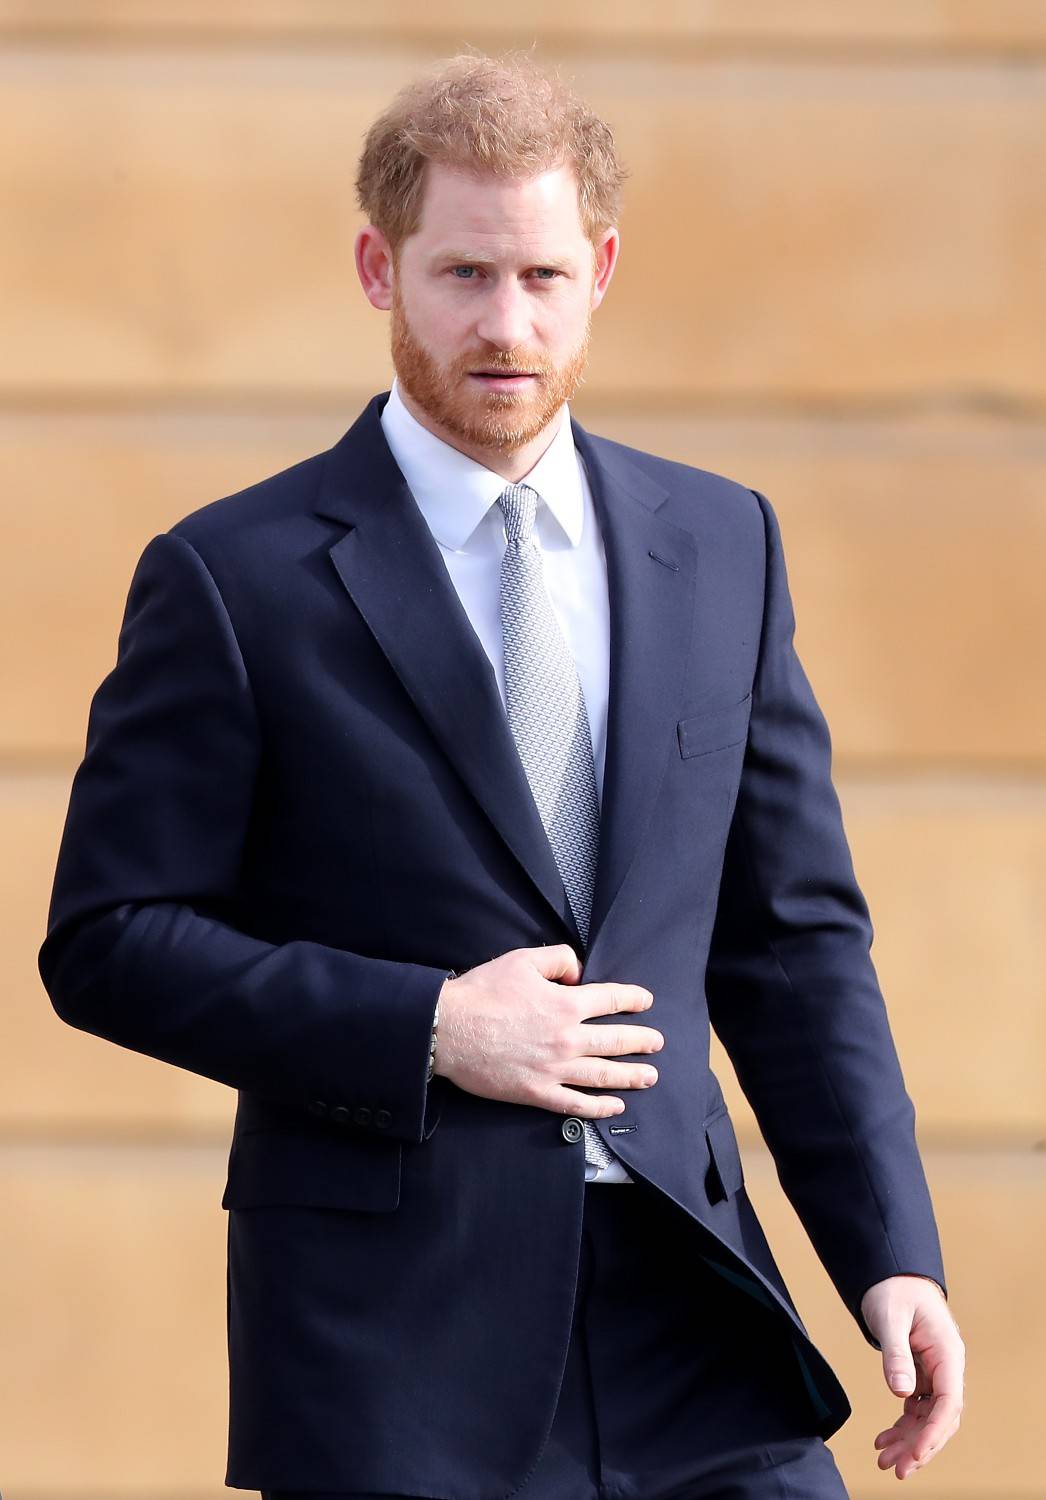 L’emergenza da coronavirus potrebbe far riavvicinare il principe Harry a William? 